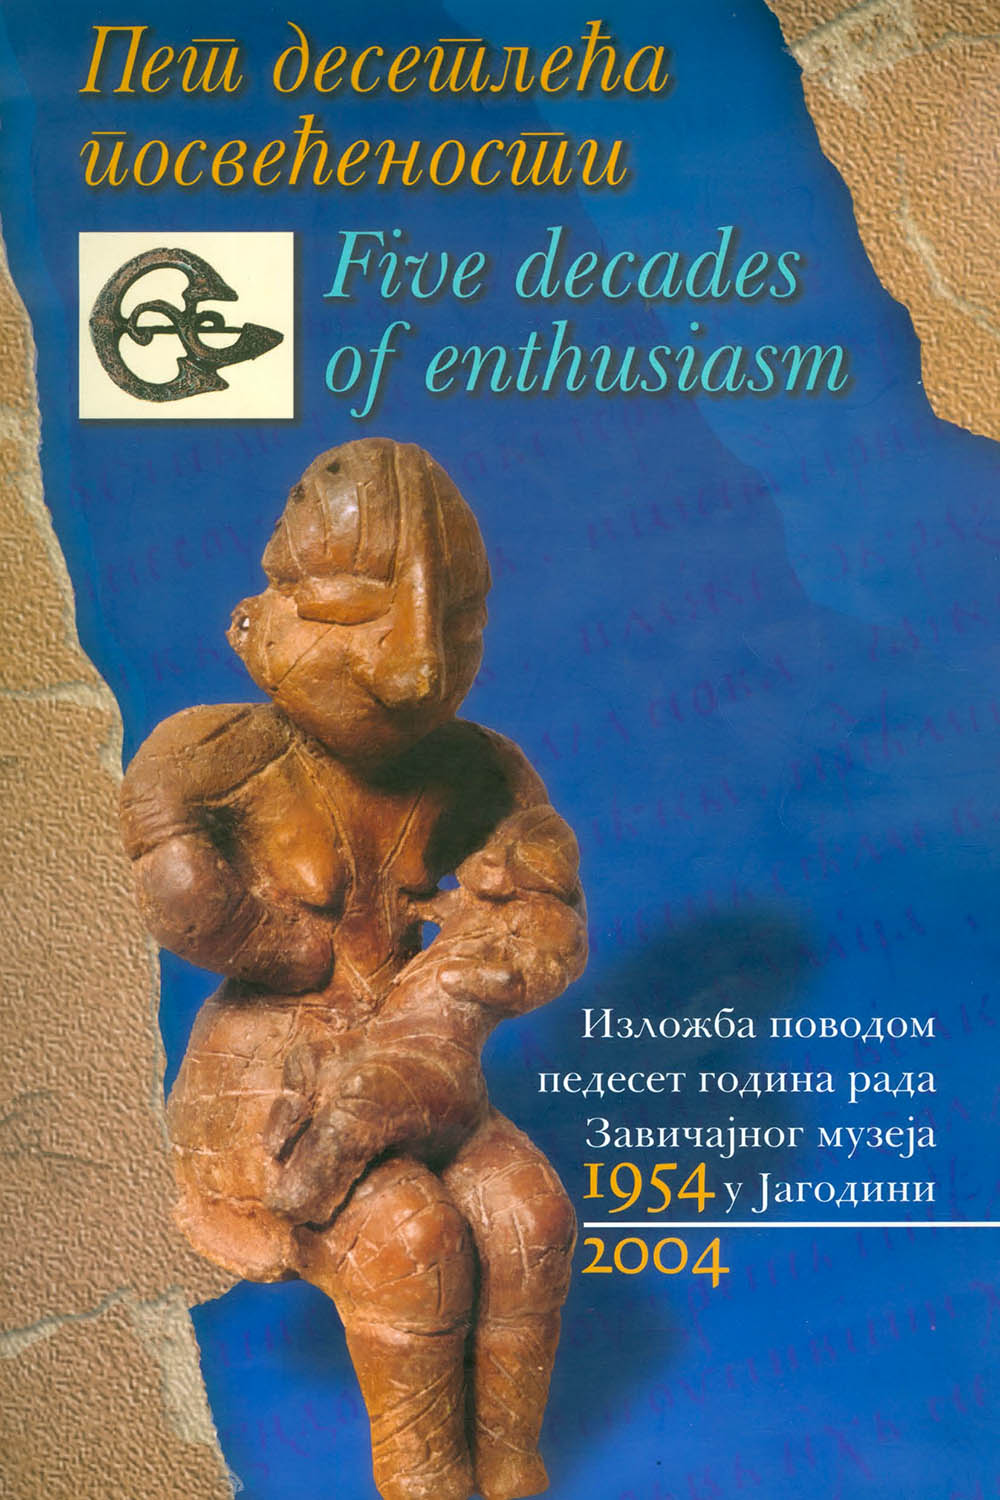 Пет десетлећа посвећености: педесет година рада Завичајног музеја у Јагодини 1954-2004